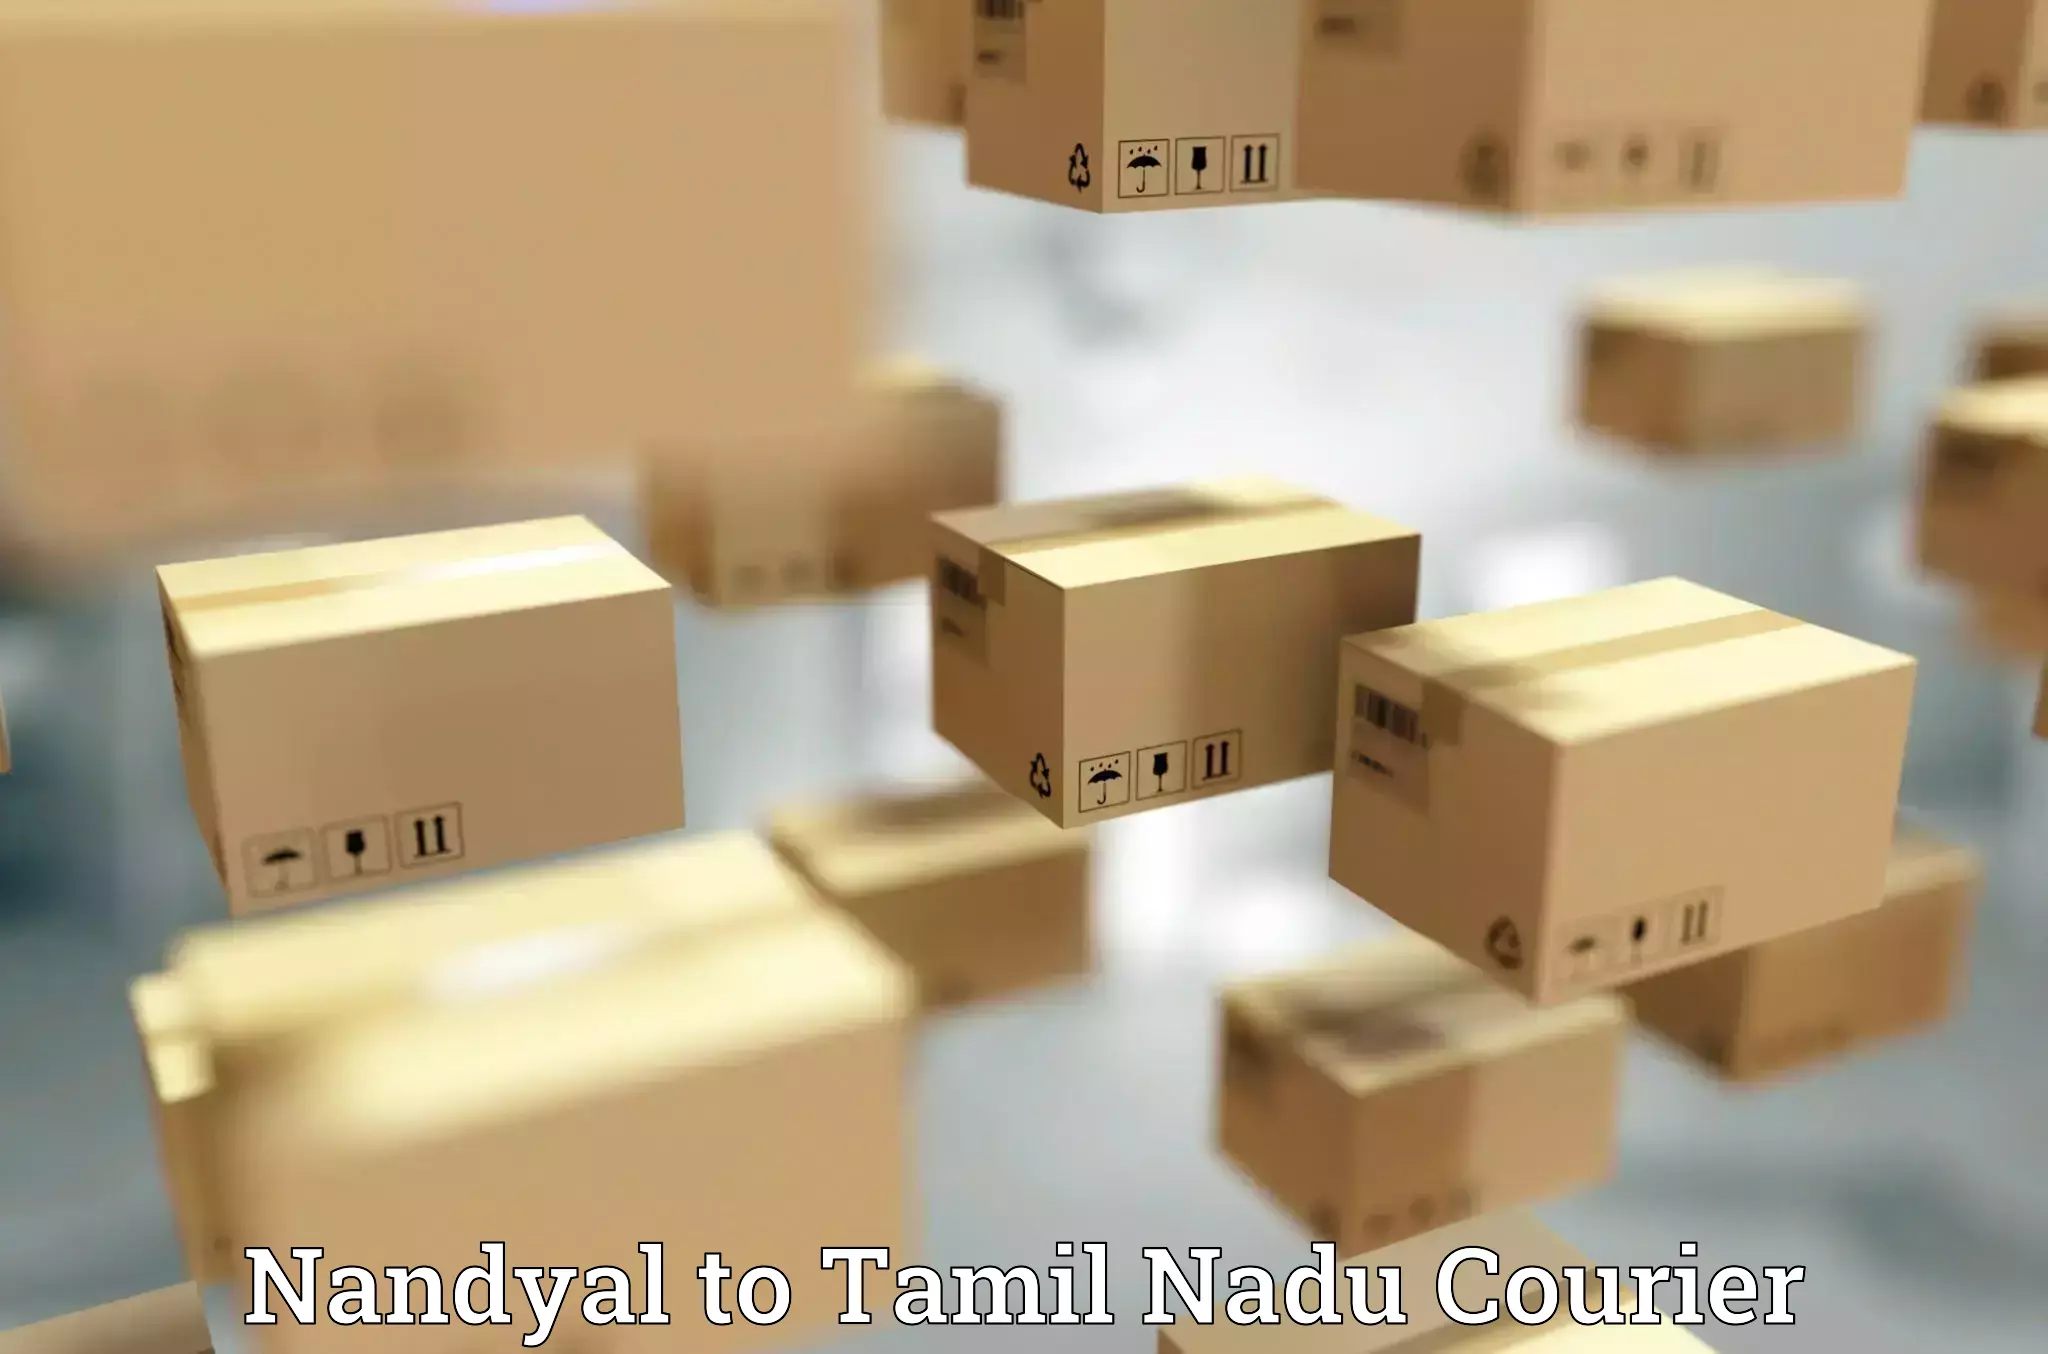 Seamless shipping experience Nandyal to Tallakulam